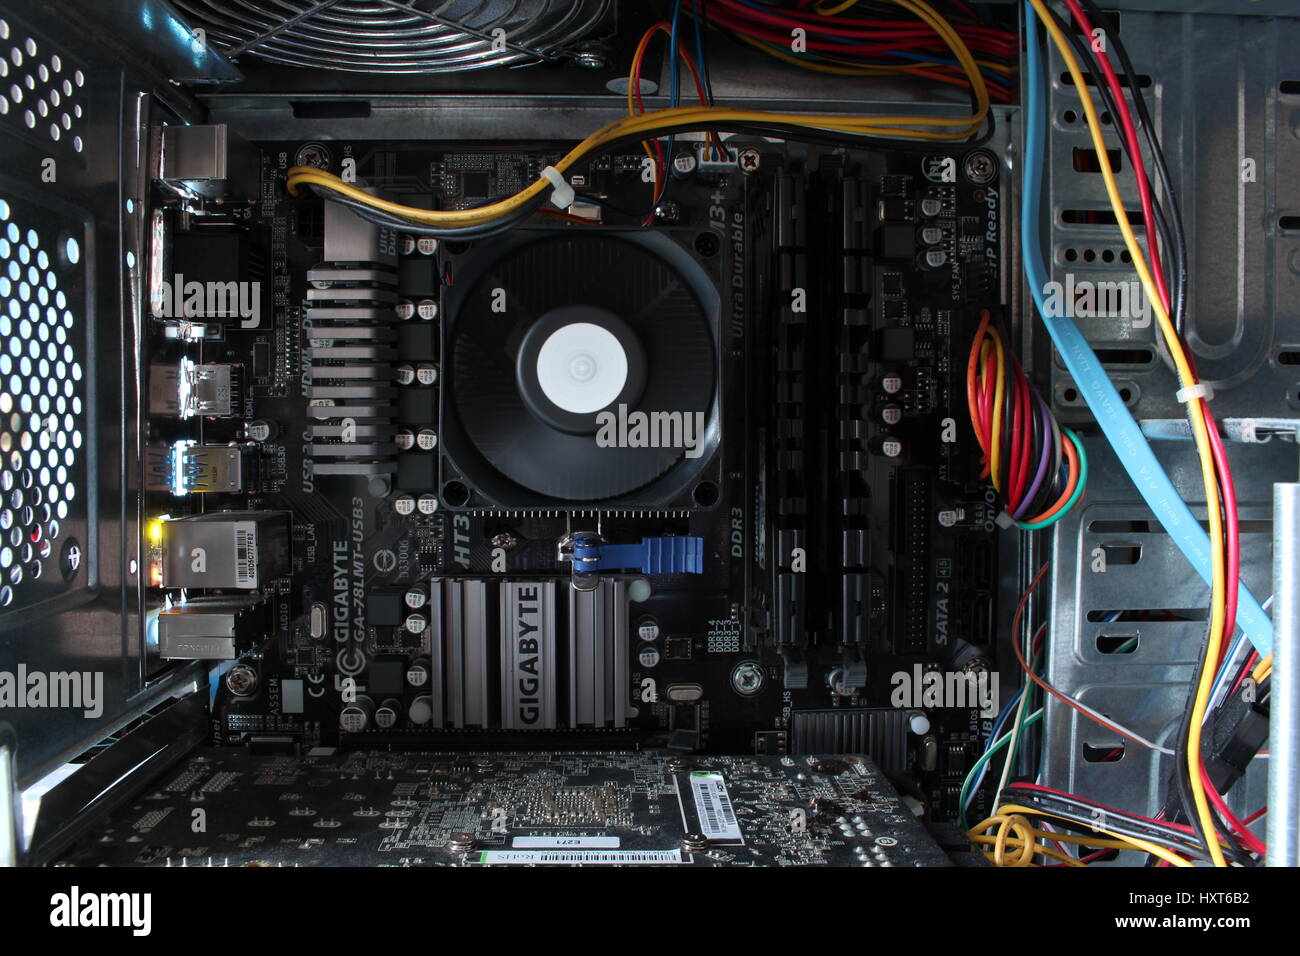 Im Inneren des Gehäuses eines PCs Stockfotografie - Alamy